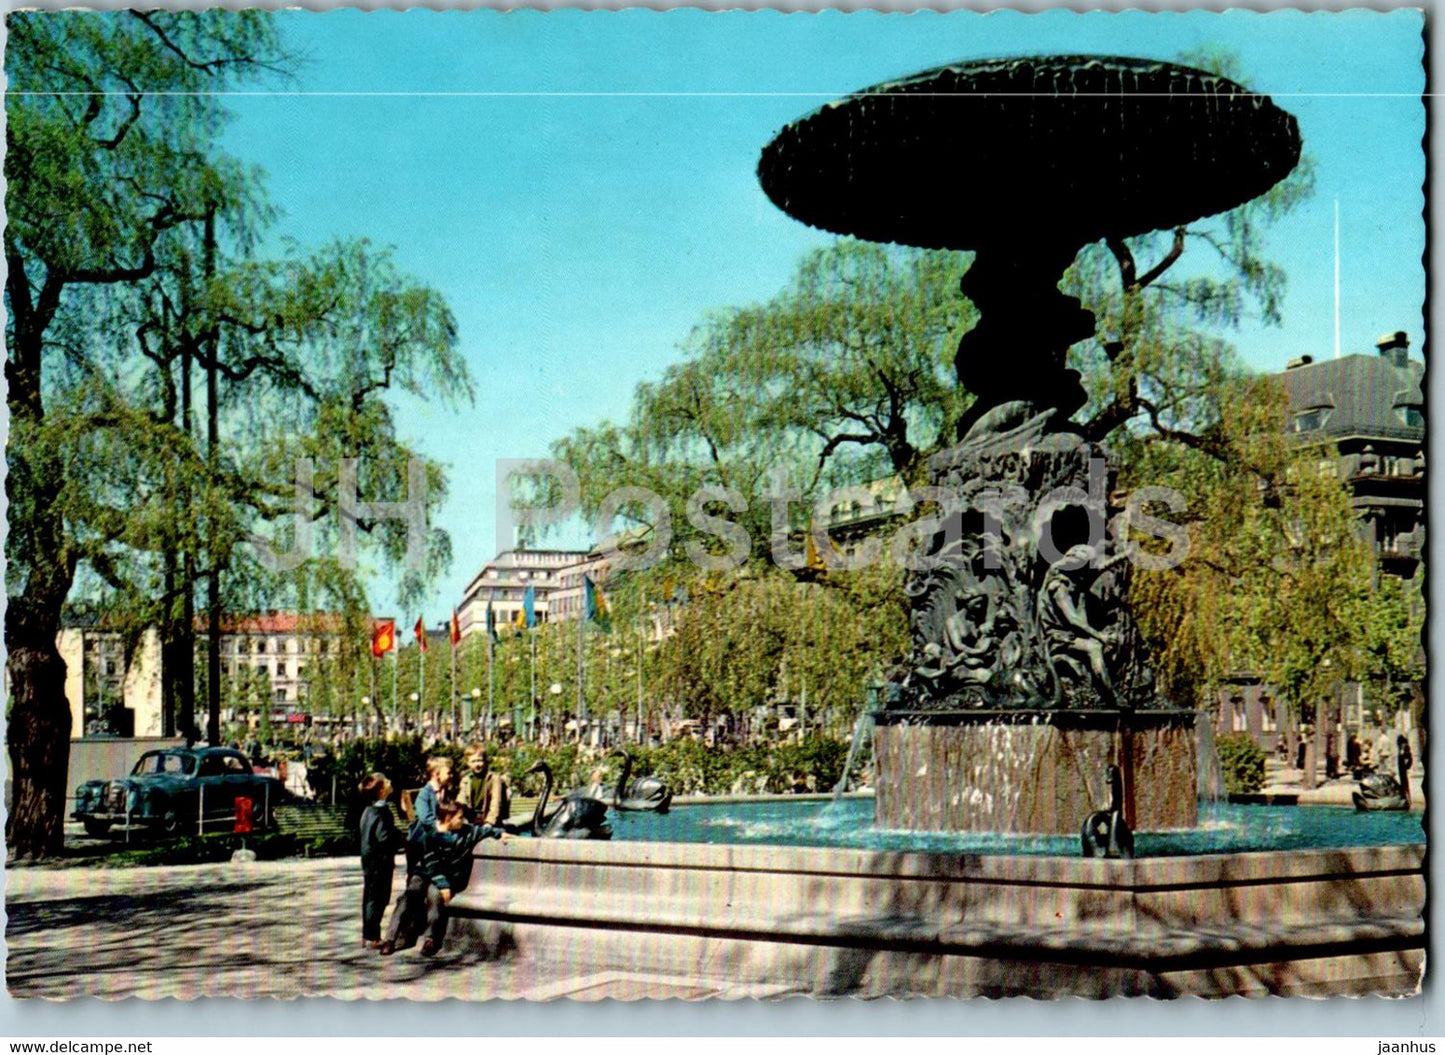 Stockholm - Molins fontan - Kungstradgarden  - 524 - 1970 - Sweden - used - JH Postcards